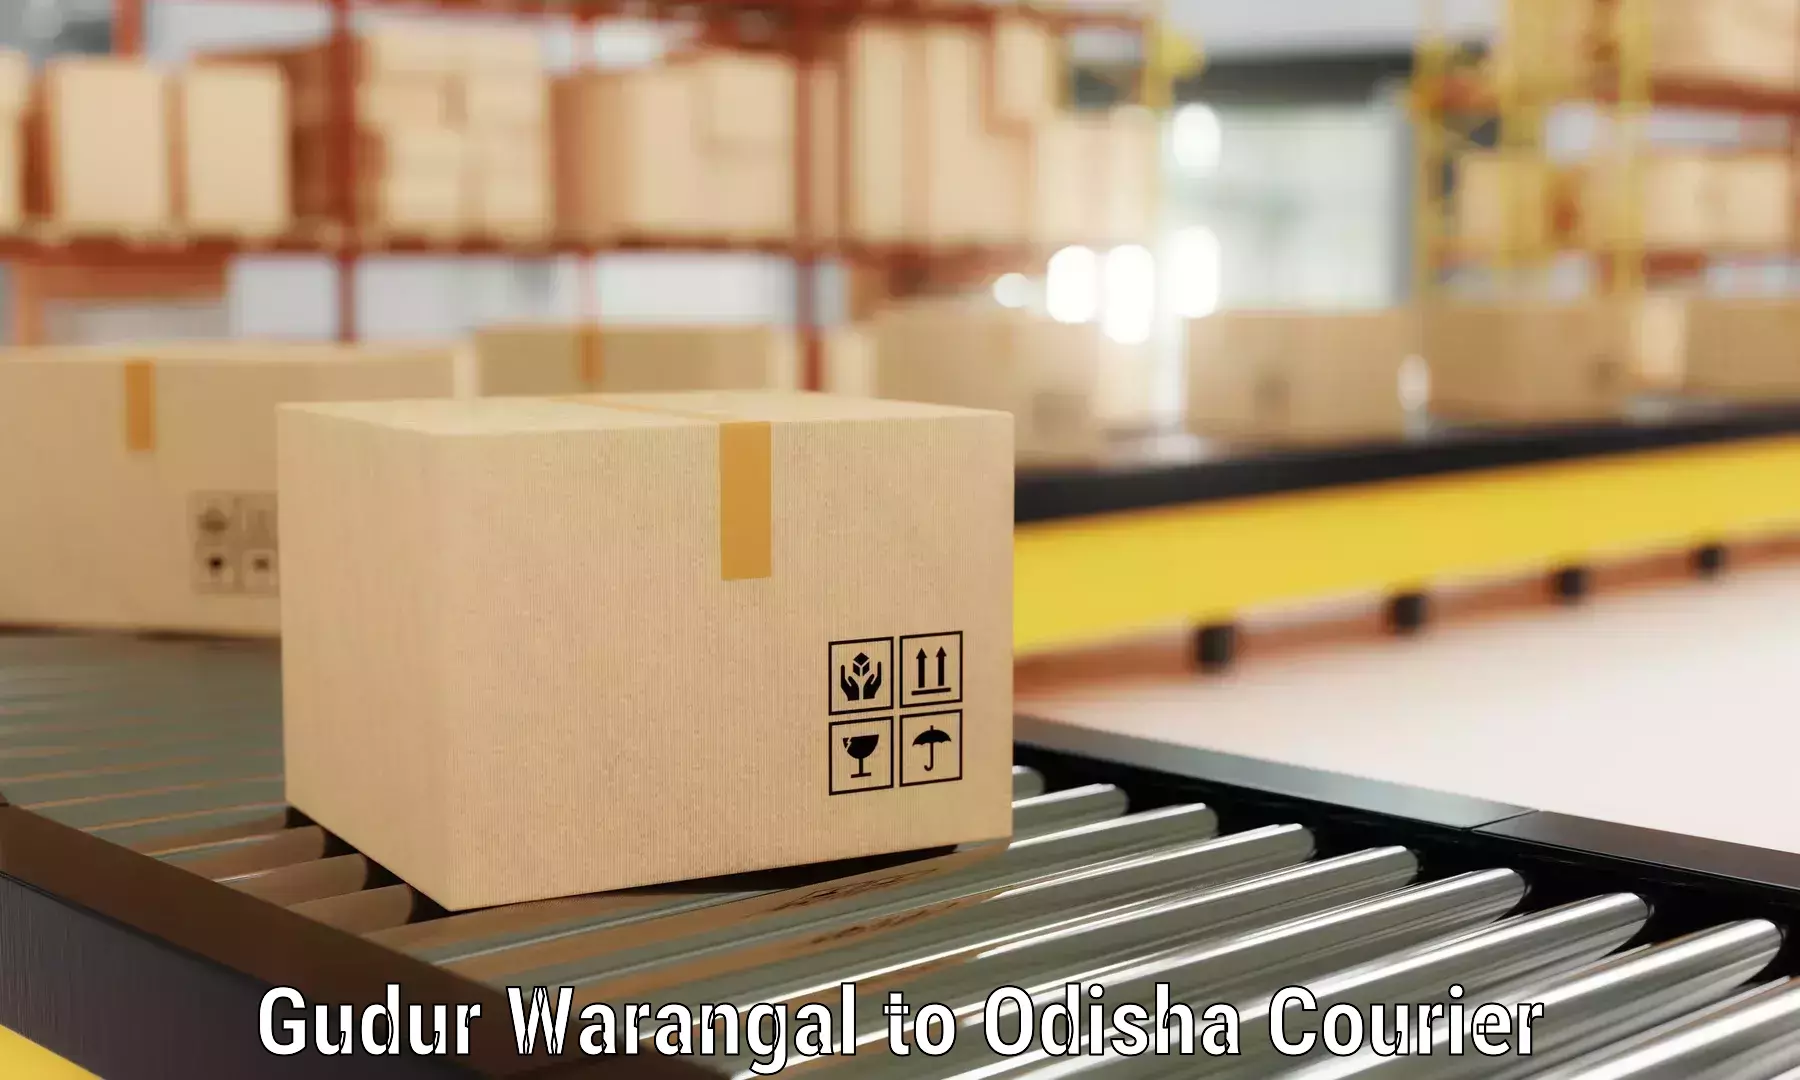 Furniture moving experts Gudur Warangal to Brajrajnagar